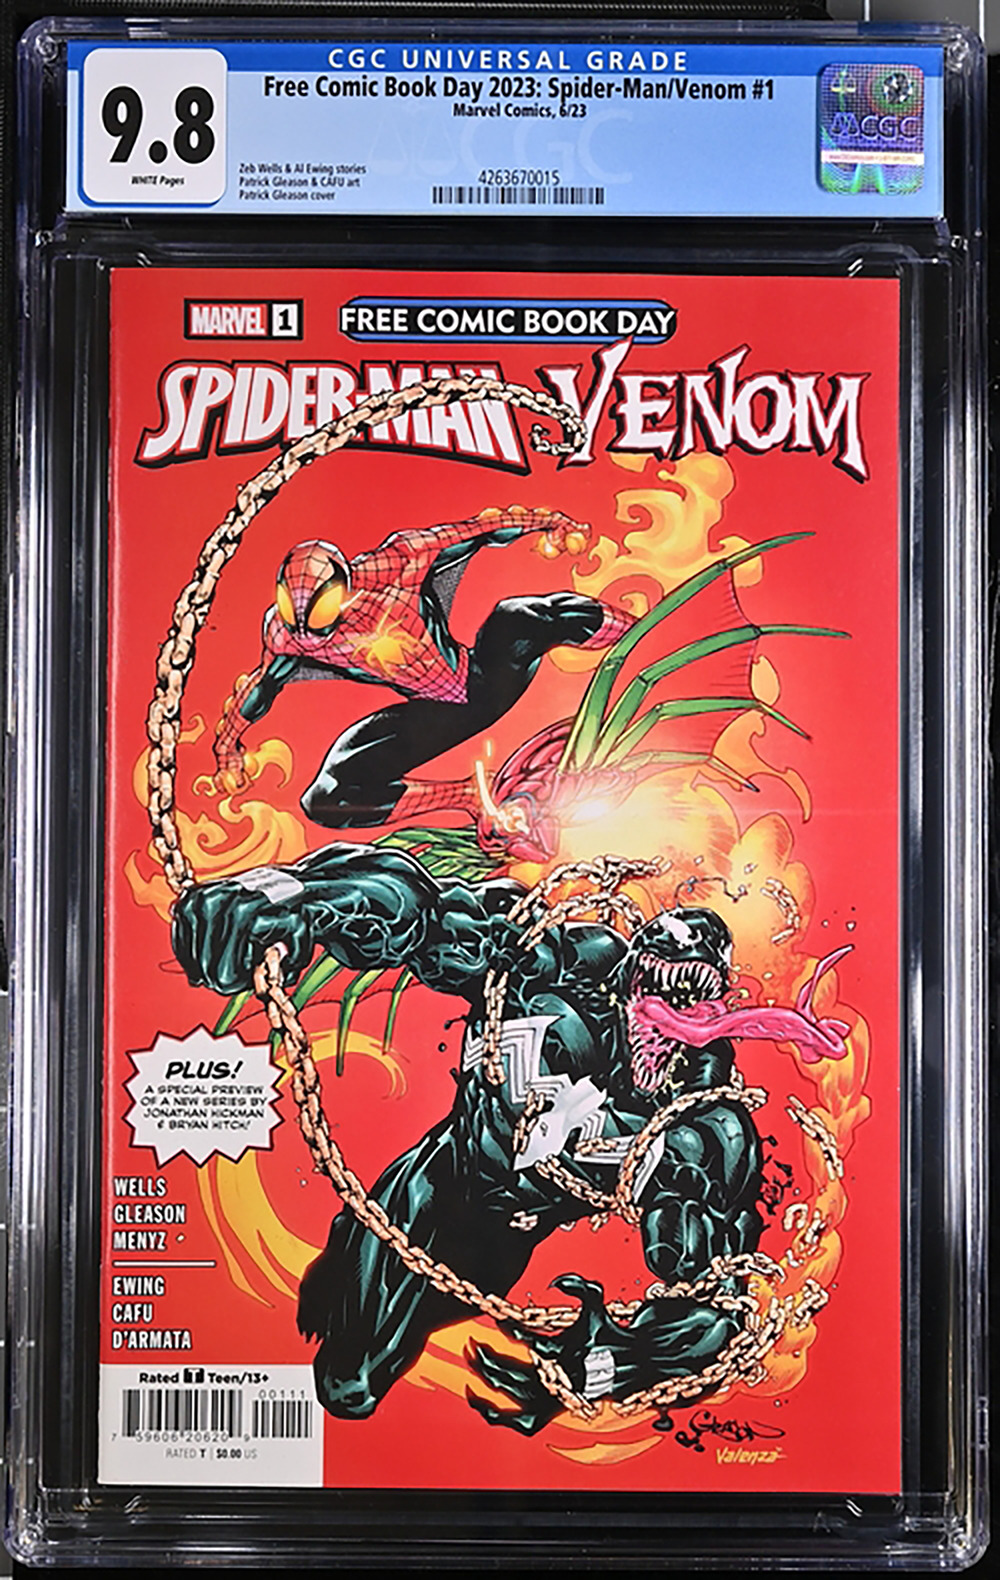 Spider-Man/Venom #1  FCBD 2023, CGC 9.8, Mint Case White Pages Only 10 at CGC